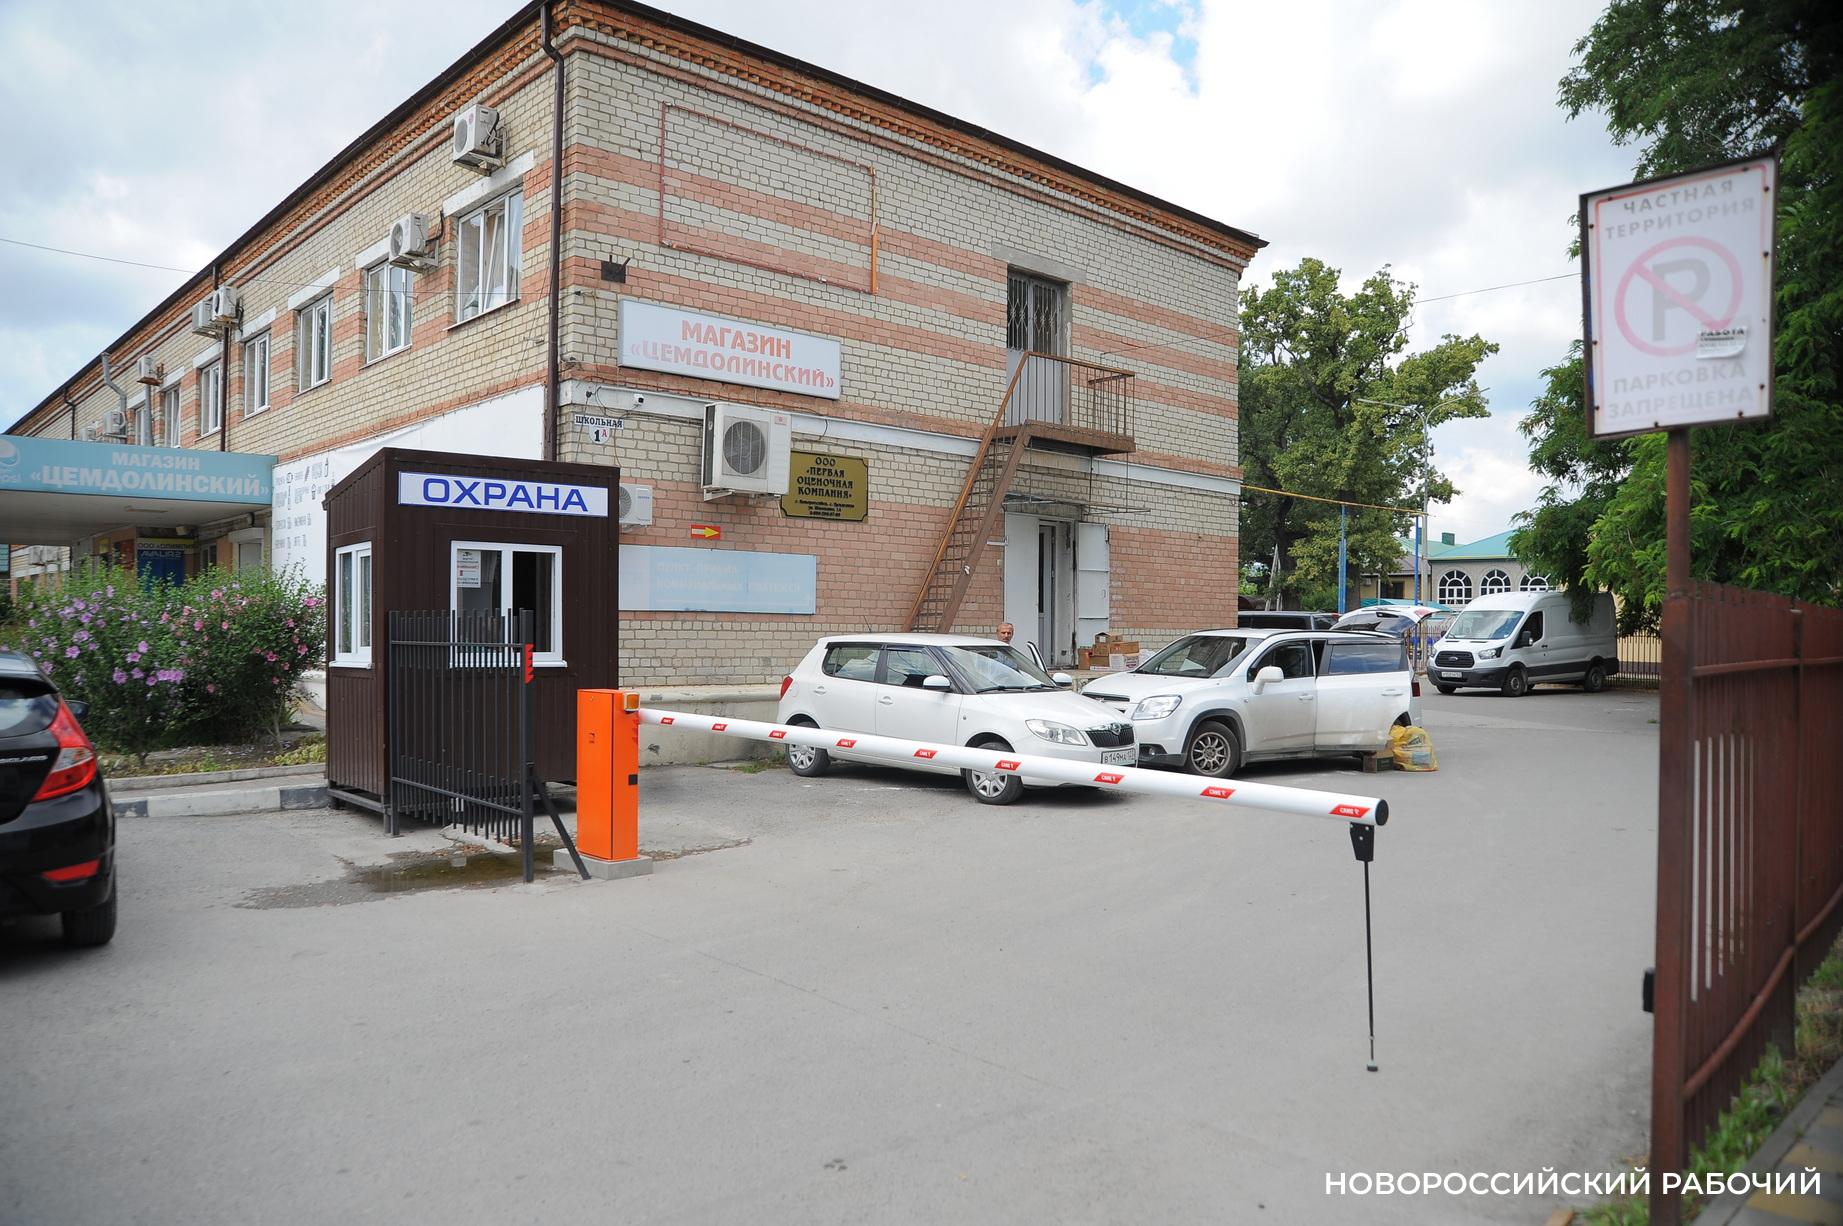 В Новороссийске перегородили шлагбаумом въезд на парковку, которую горожане считали своей